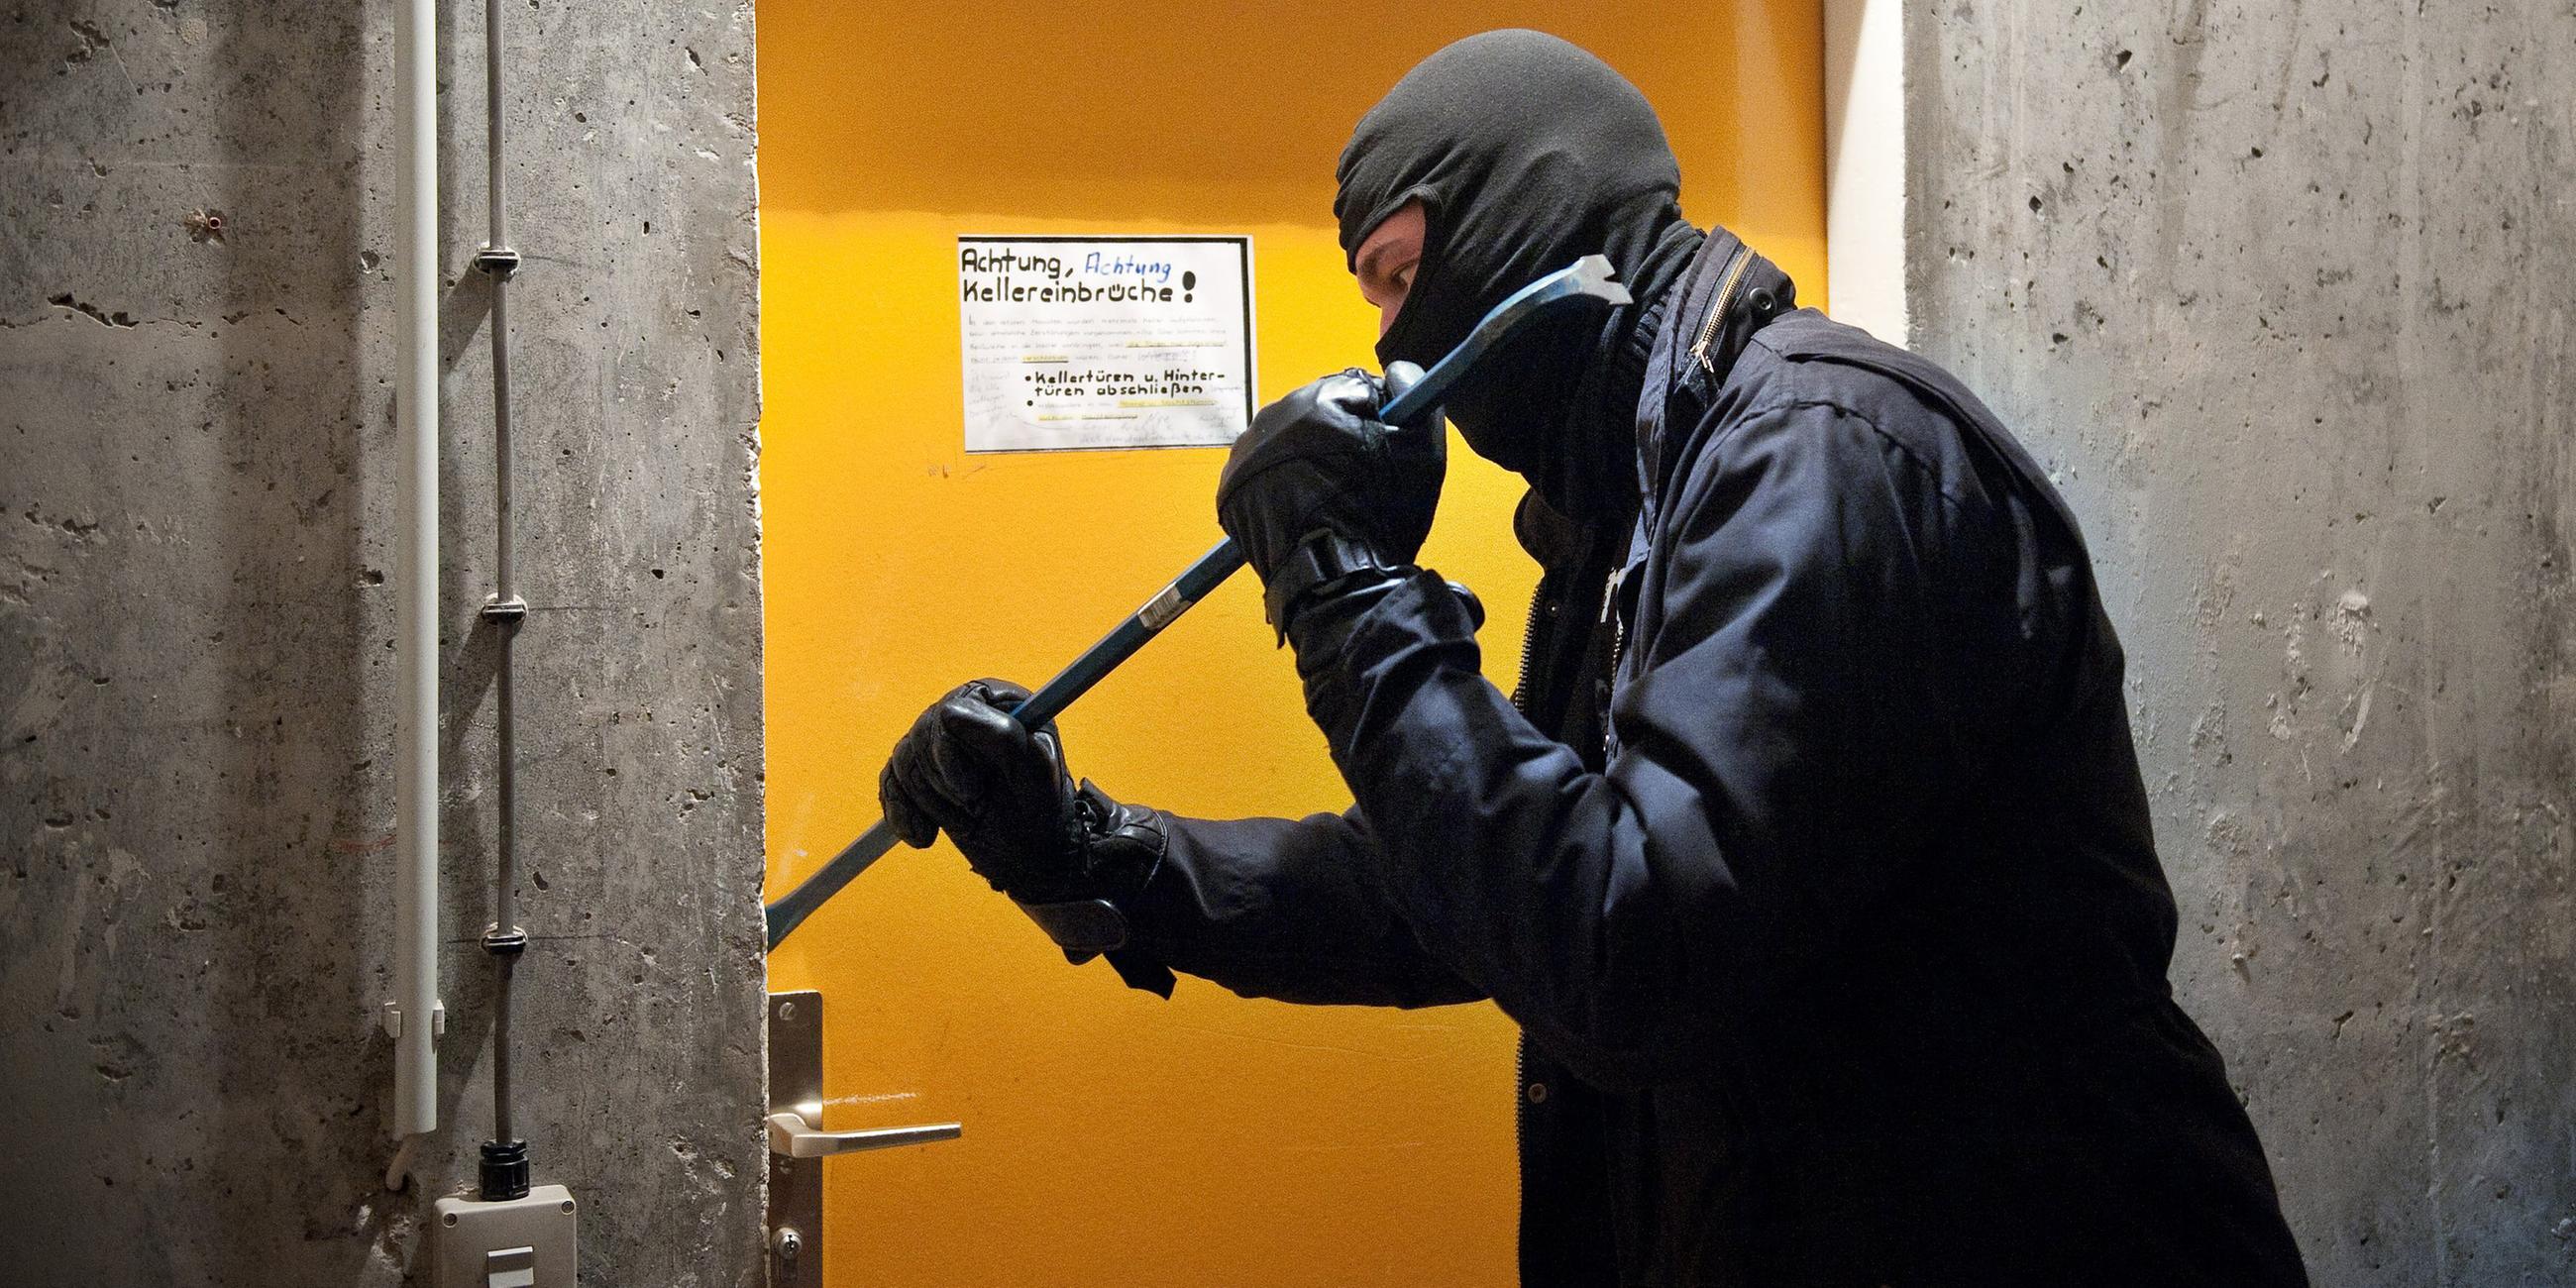 Ein Mann hebelt am Freitag (20.04.2012) in Berlin mit einem Brecheisen eine Tür auf